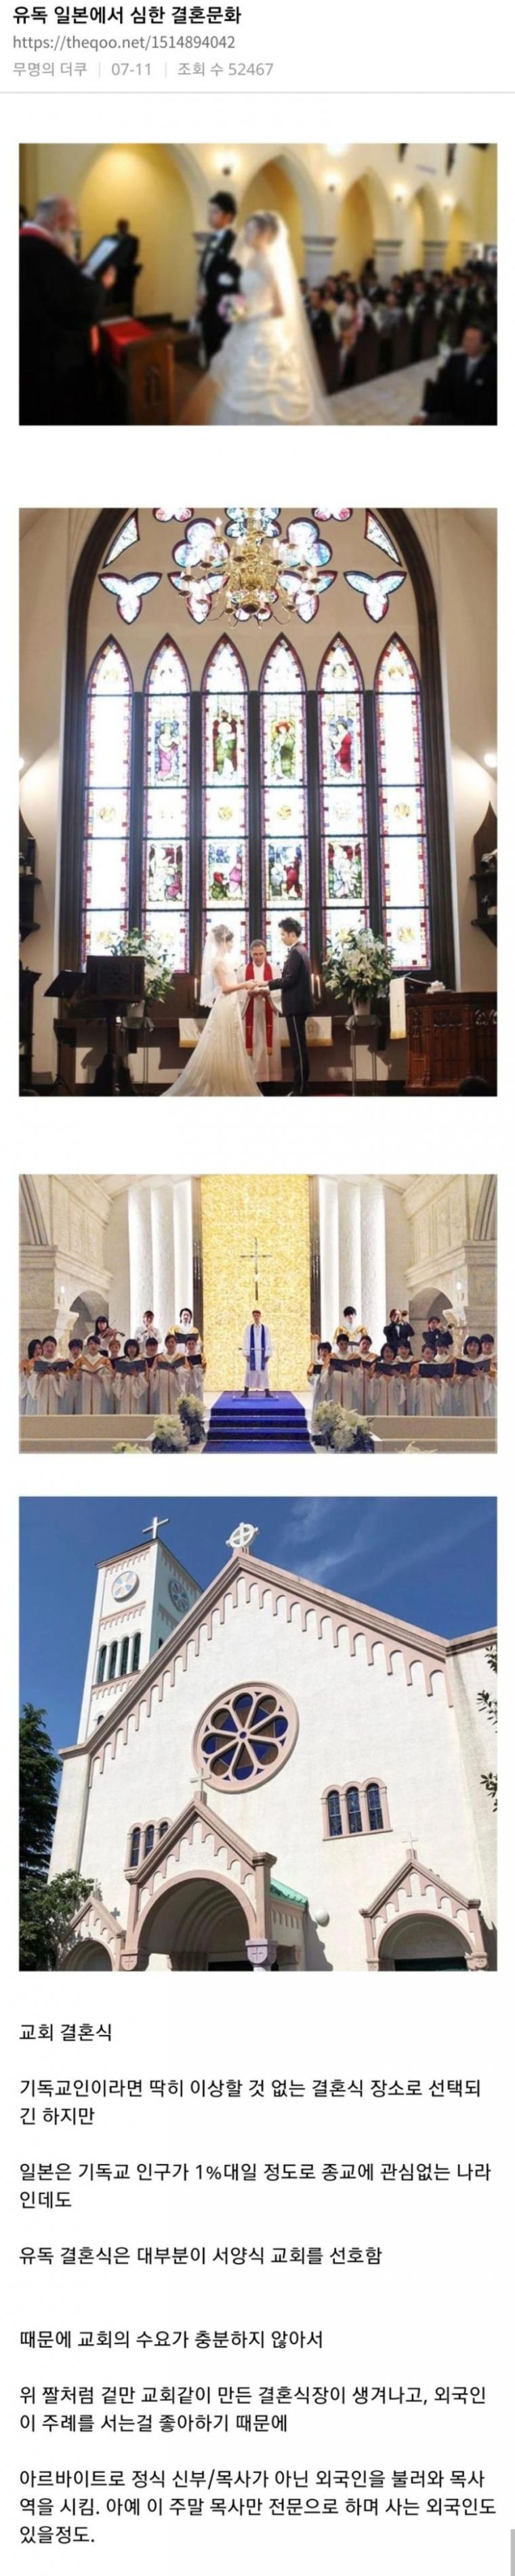 유독 일본에서 심한 결혼문화.jpeg